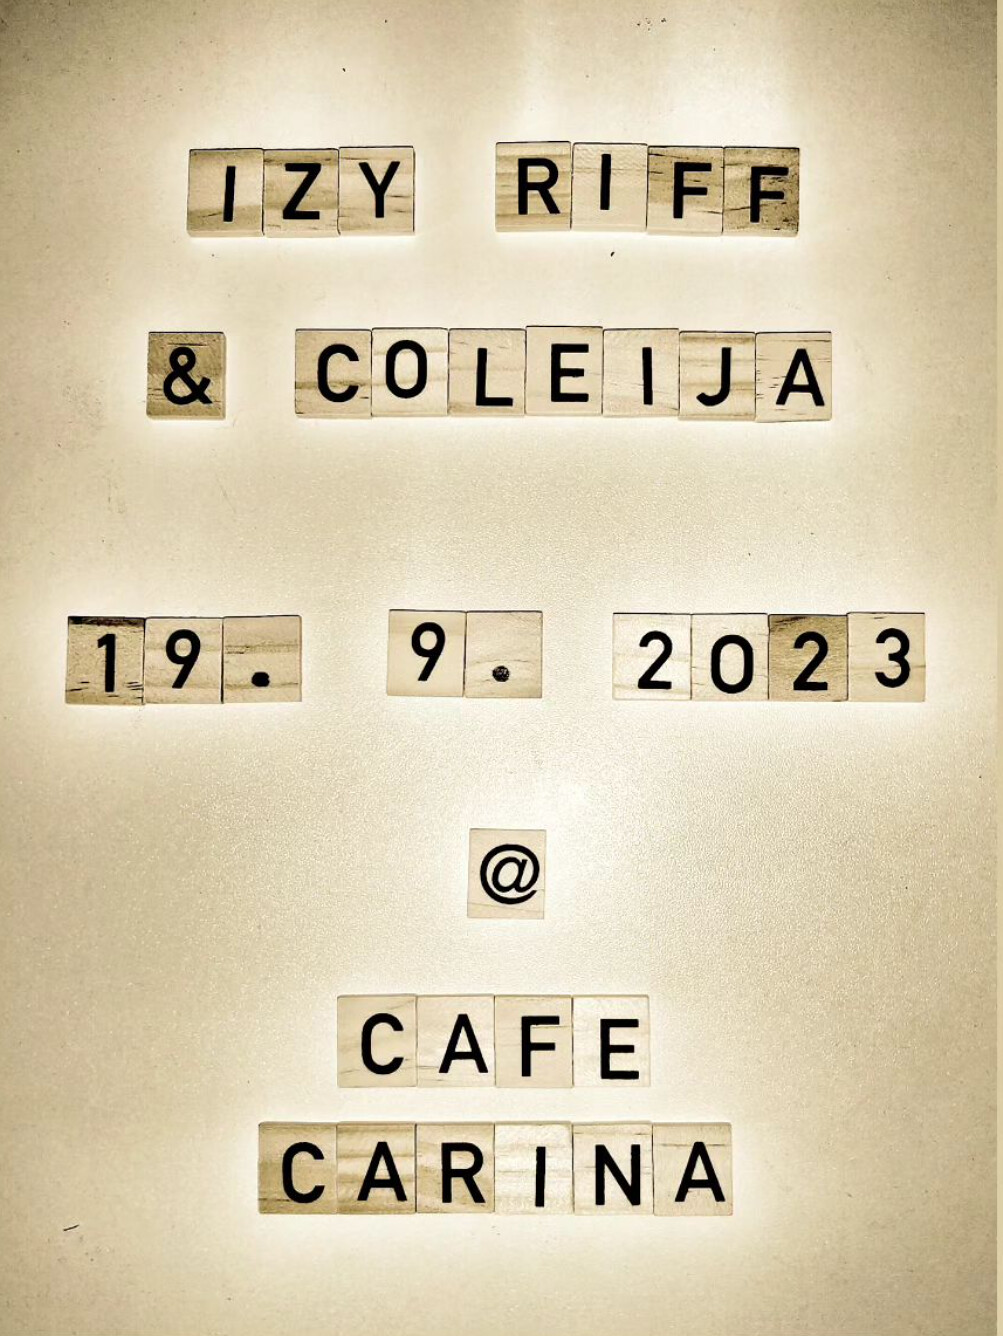 COLEIJA / IZY RIFF am 19. September 2023 @ Café Carina.